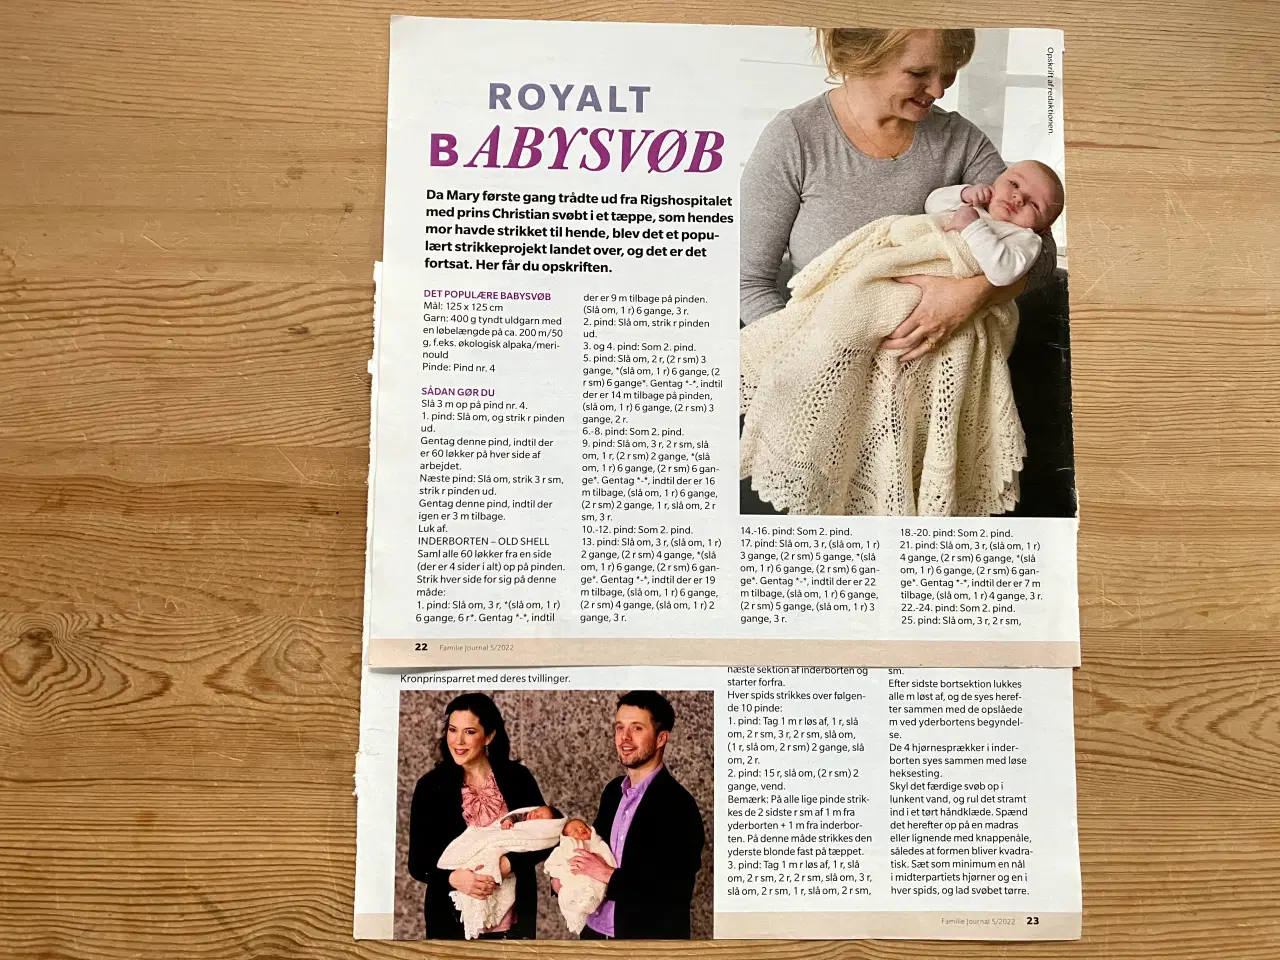 Billede 1 - Royalt babysvøb - strikket